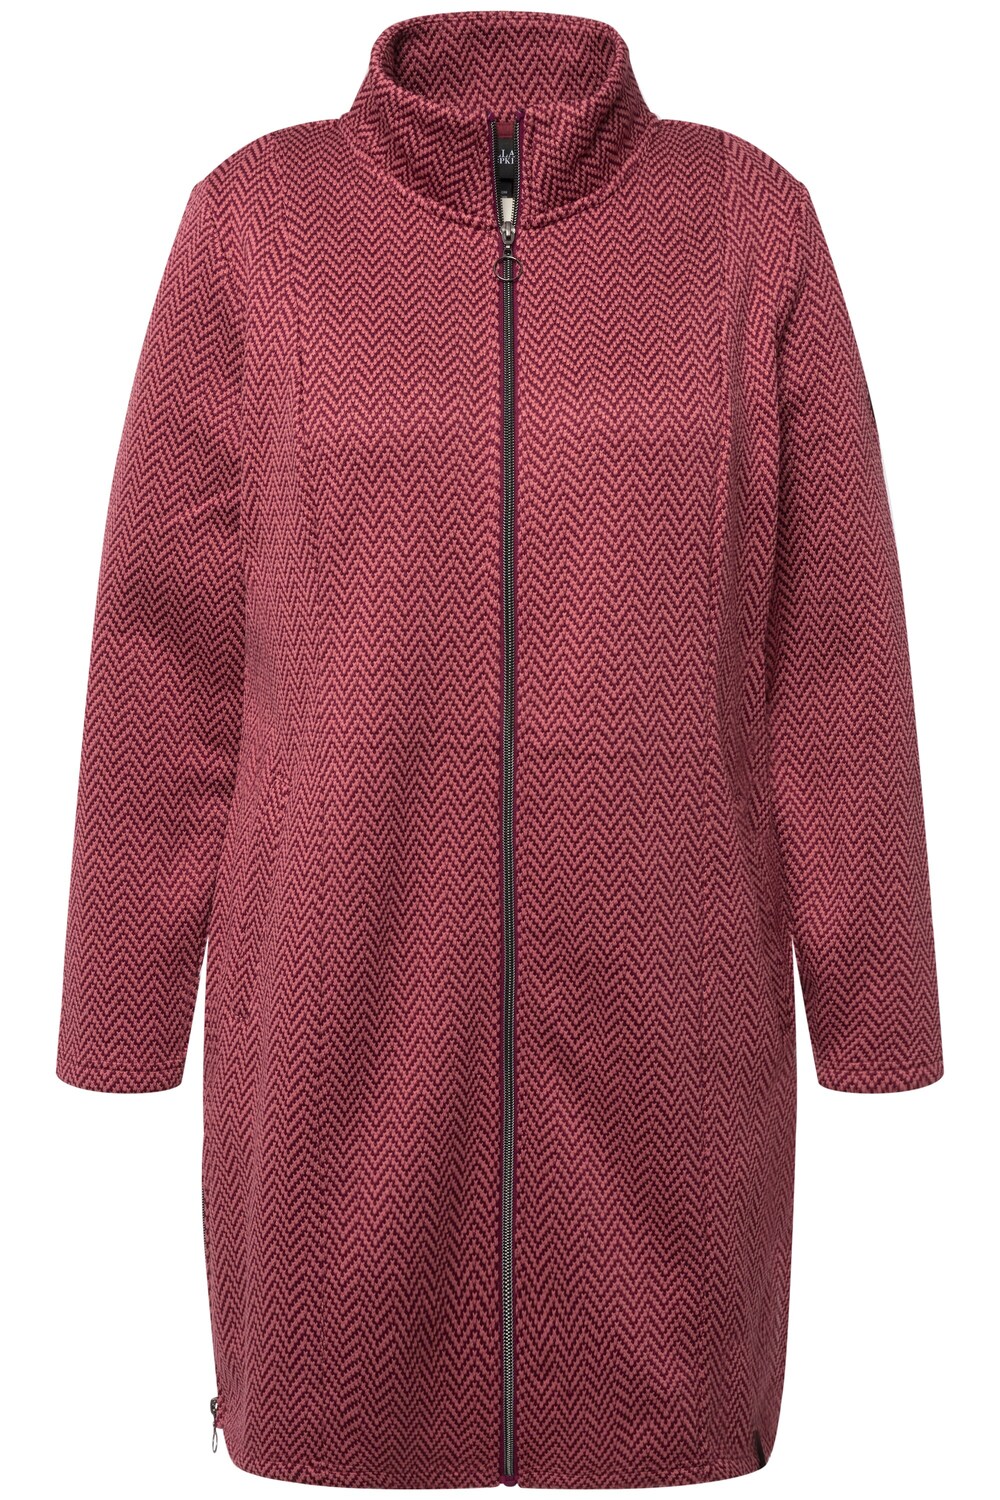 Межсезонное пальто Ulla Popken, ежевика/розовый межсезонное пальто ulla popken пестрый коричневый